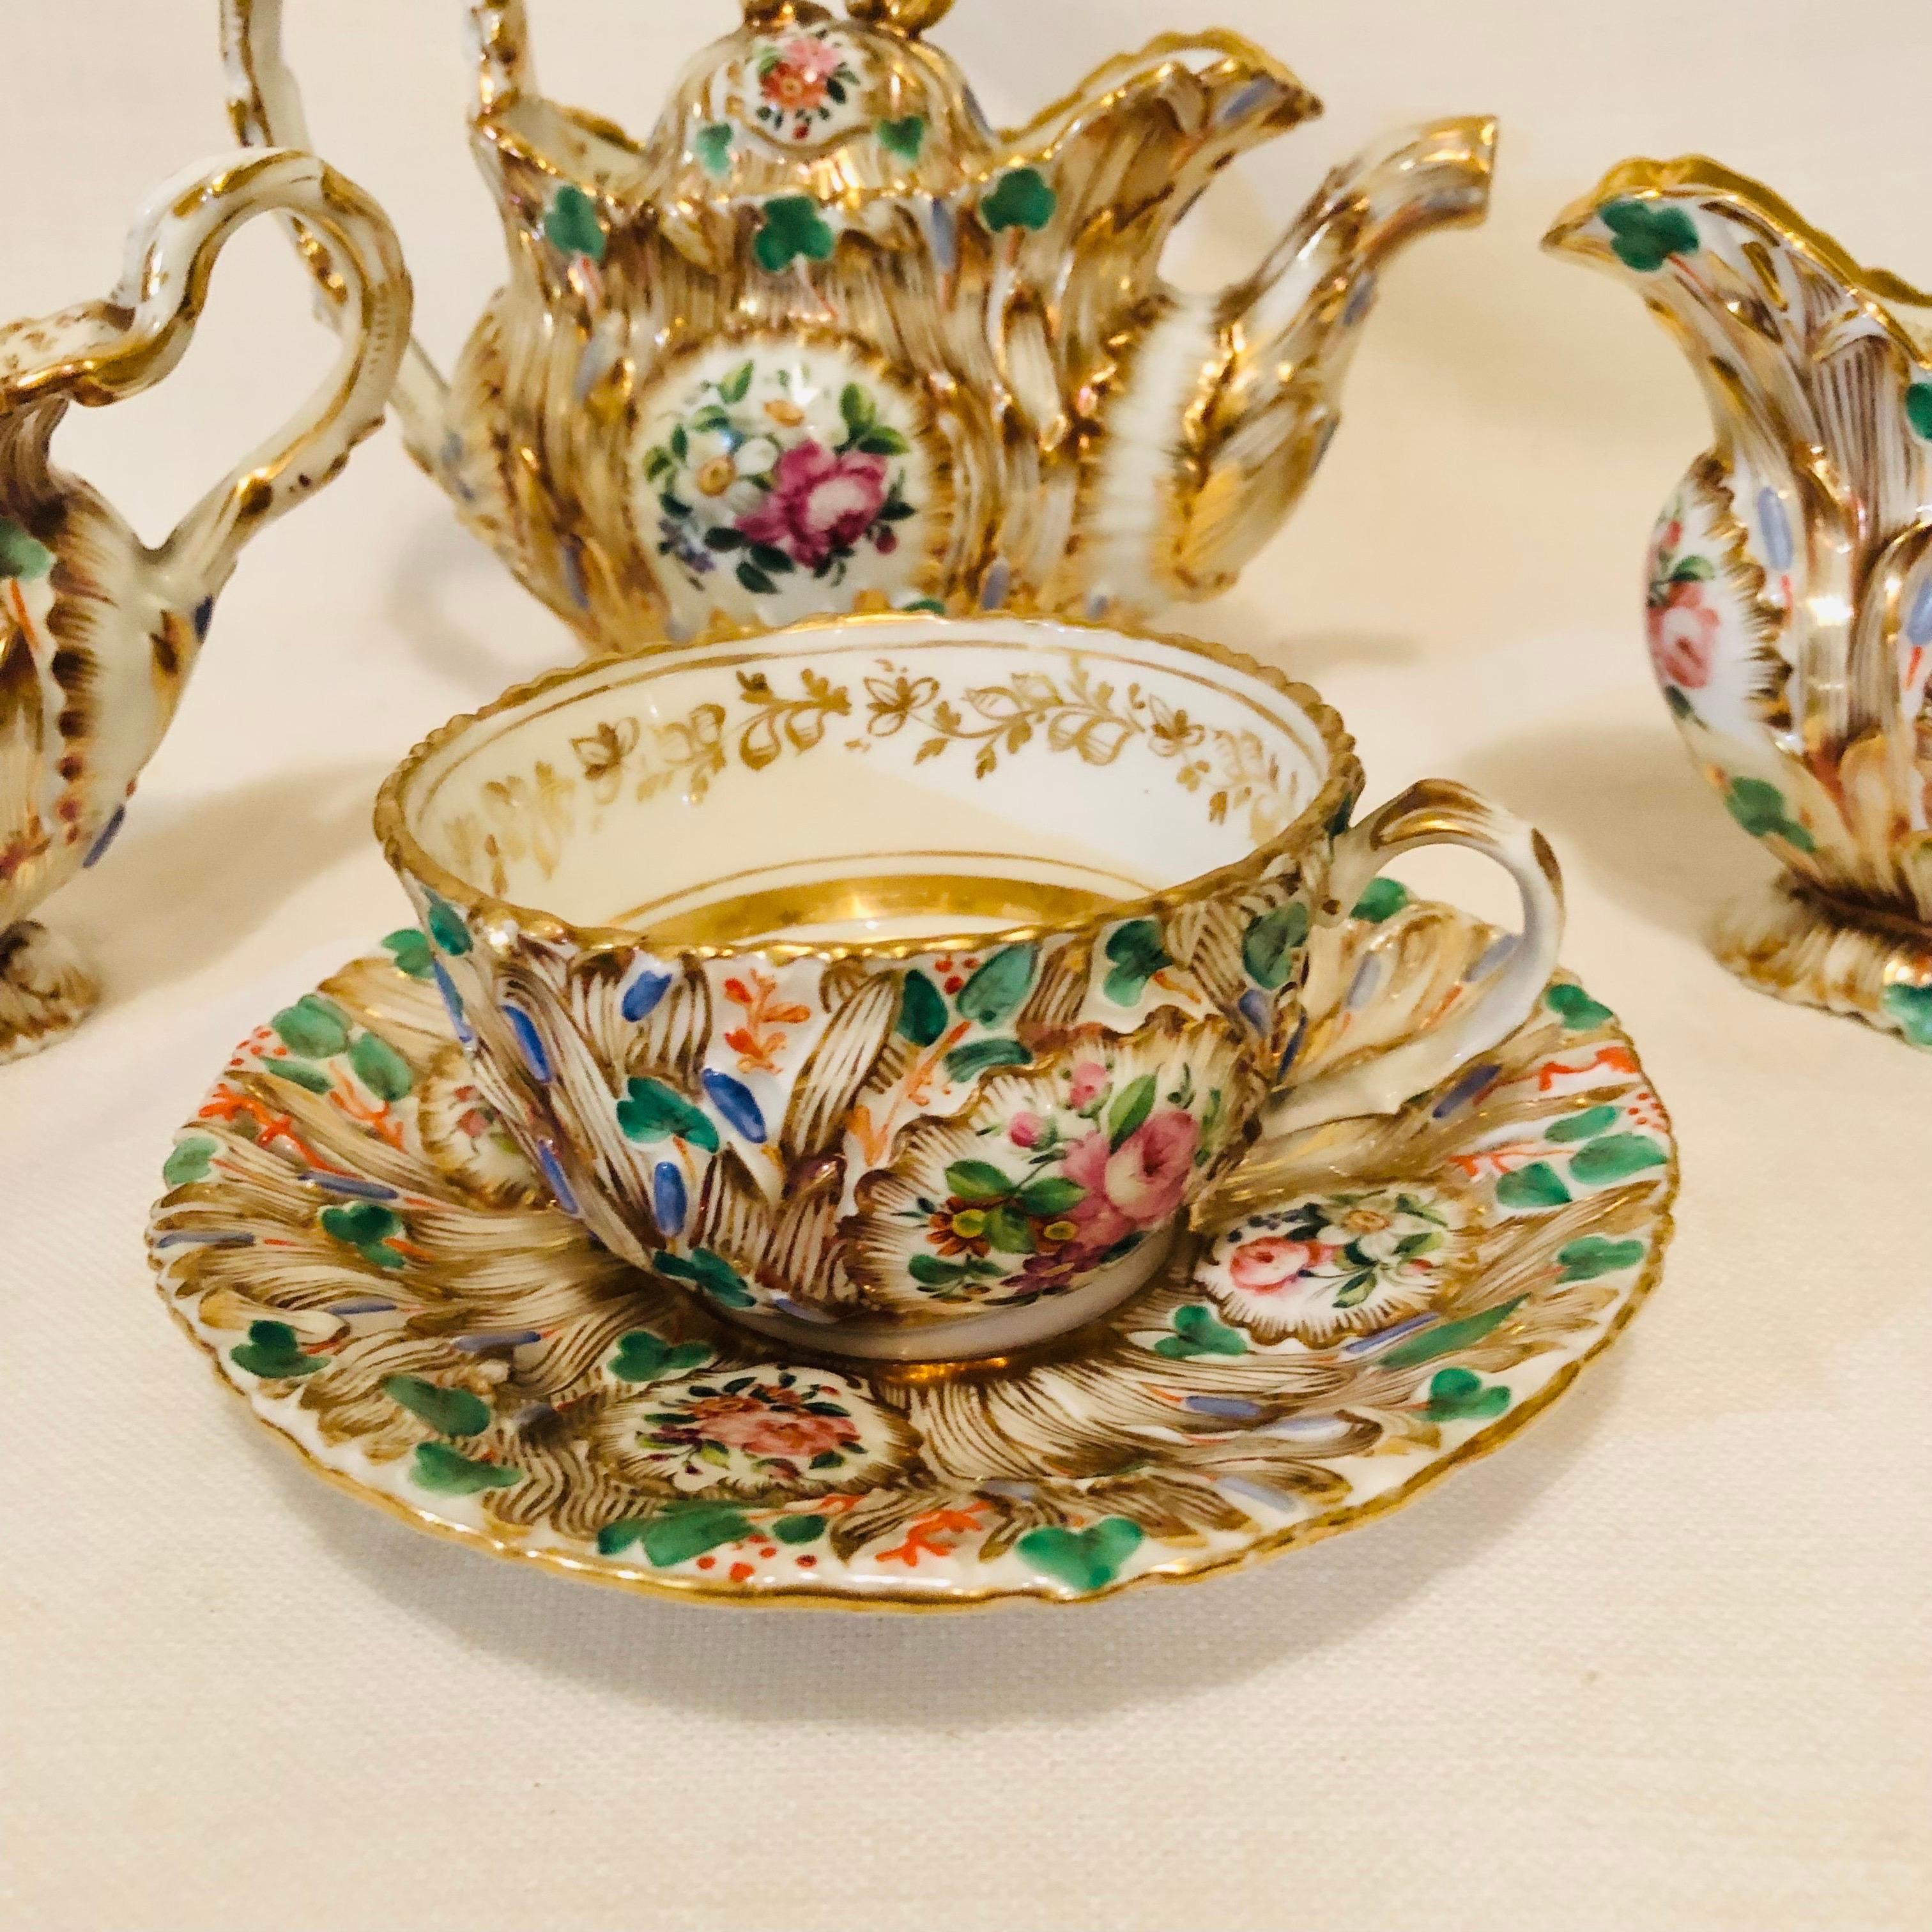 Mid-19th Century Jacob Petit Paris Porcelain Tea Set with Gilt and Colorful Rococo Decoration For Sale